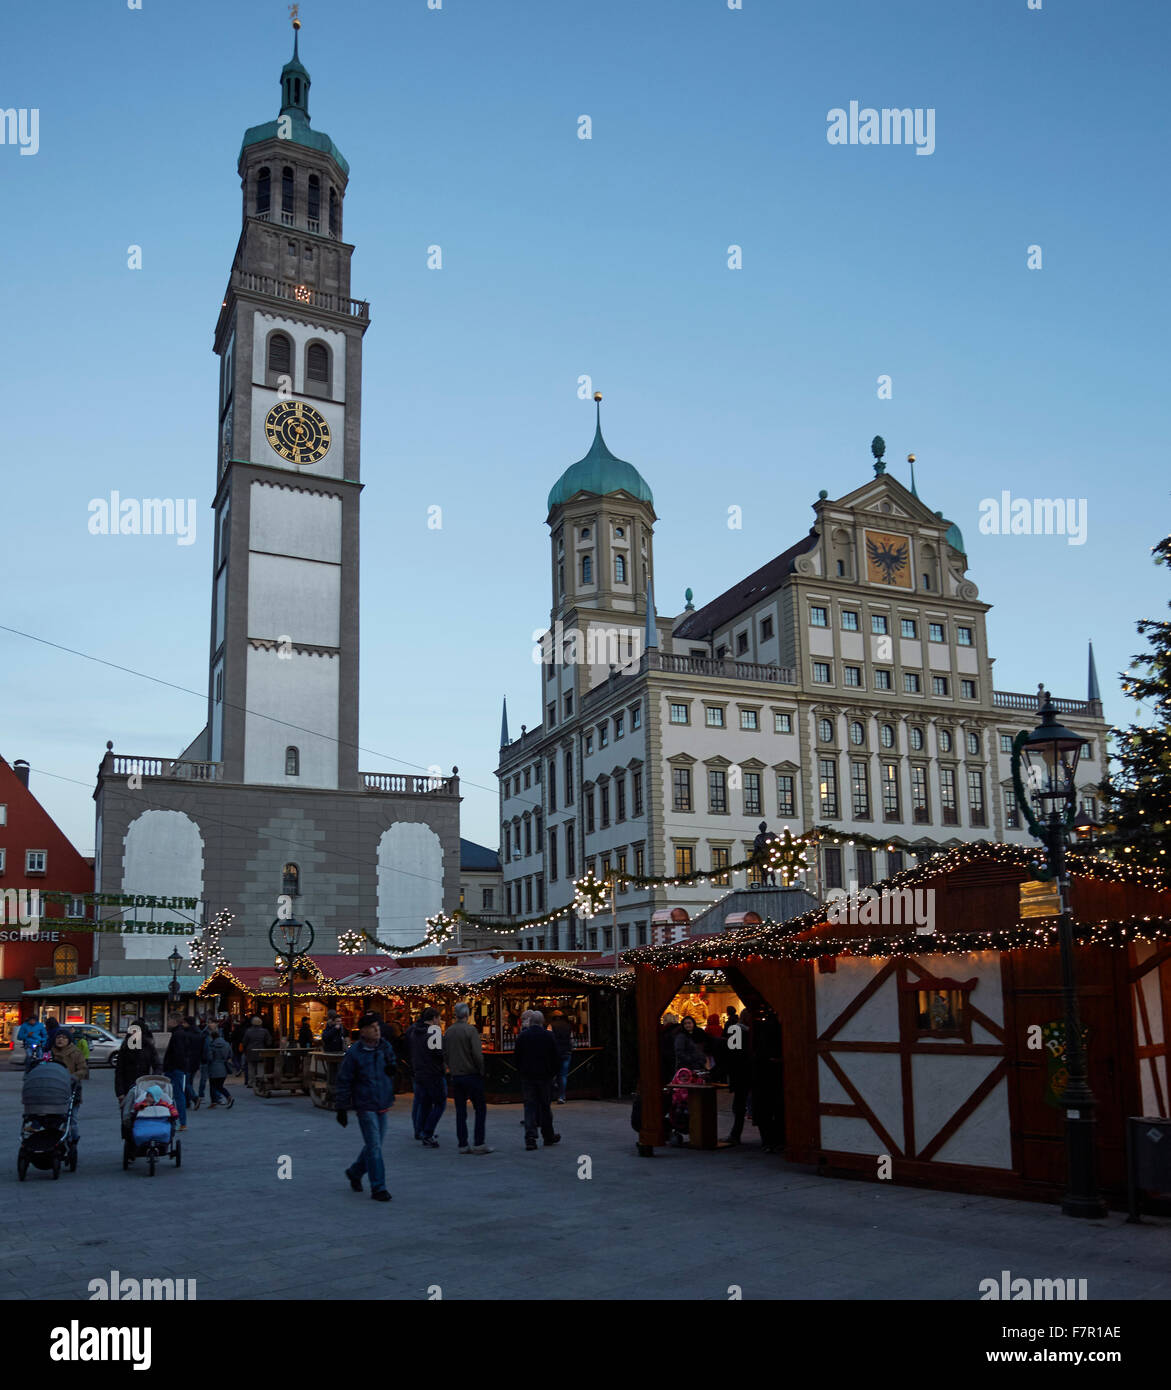 Marché de Noël Augsburg, Rathausplatz, avec l'Hôtel de Ville et Perlachturm, Augsbourg, Bavière, Allemagne, Banque D'Images